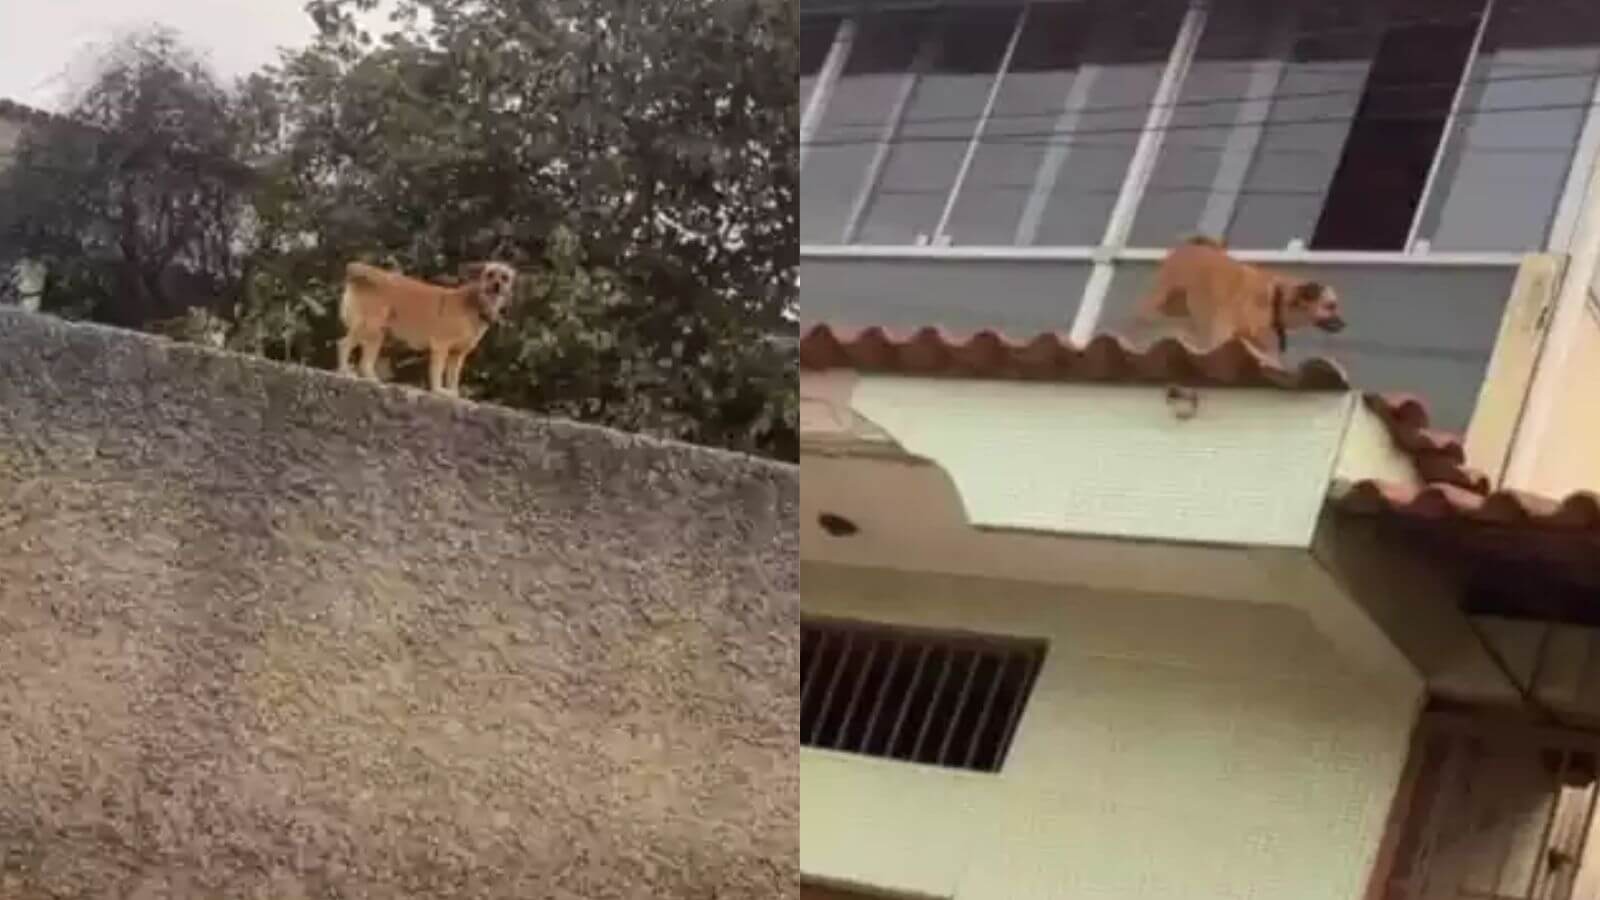 Cachorro anda em telhados e muros